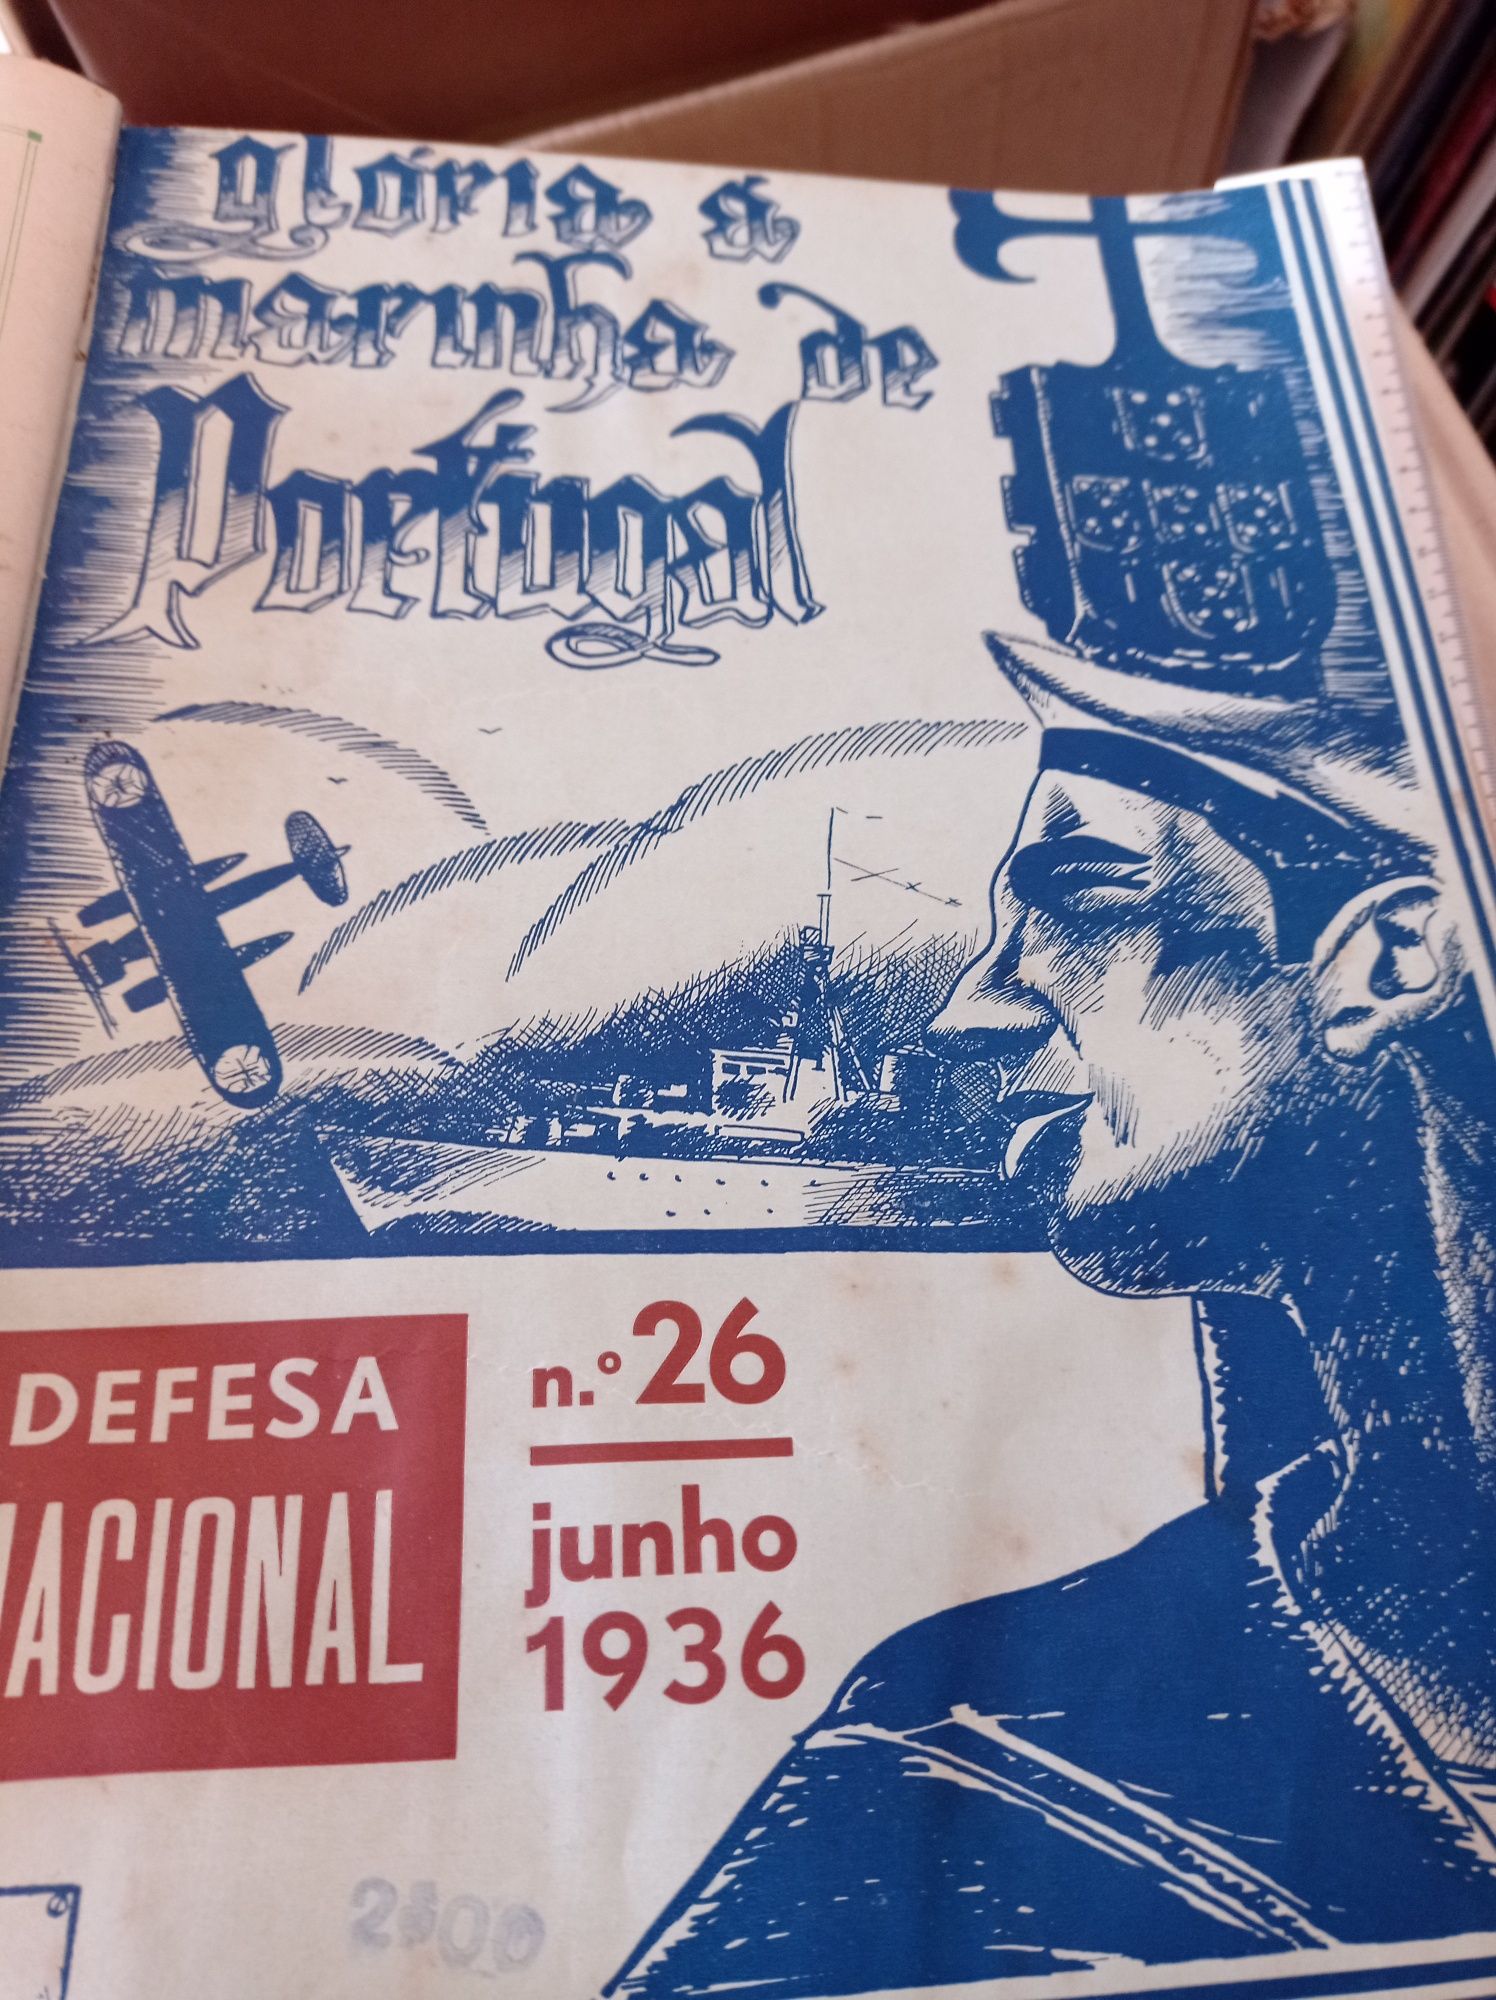 Revistas da defesa nacional